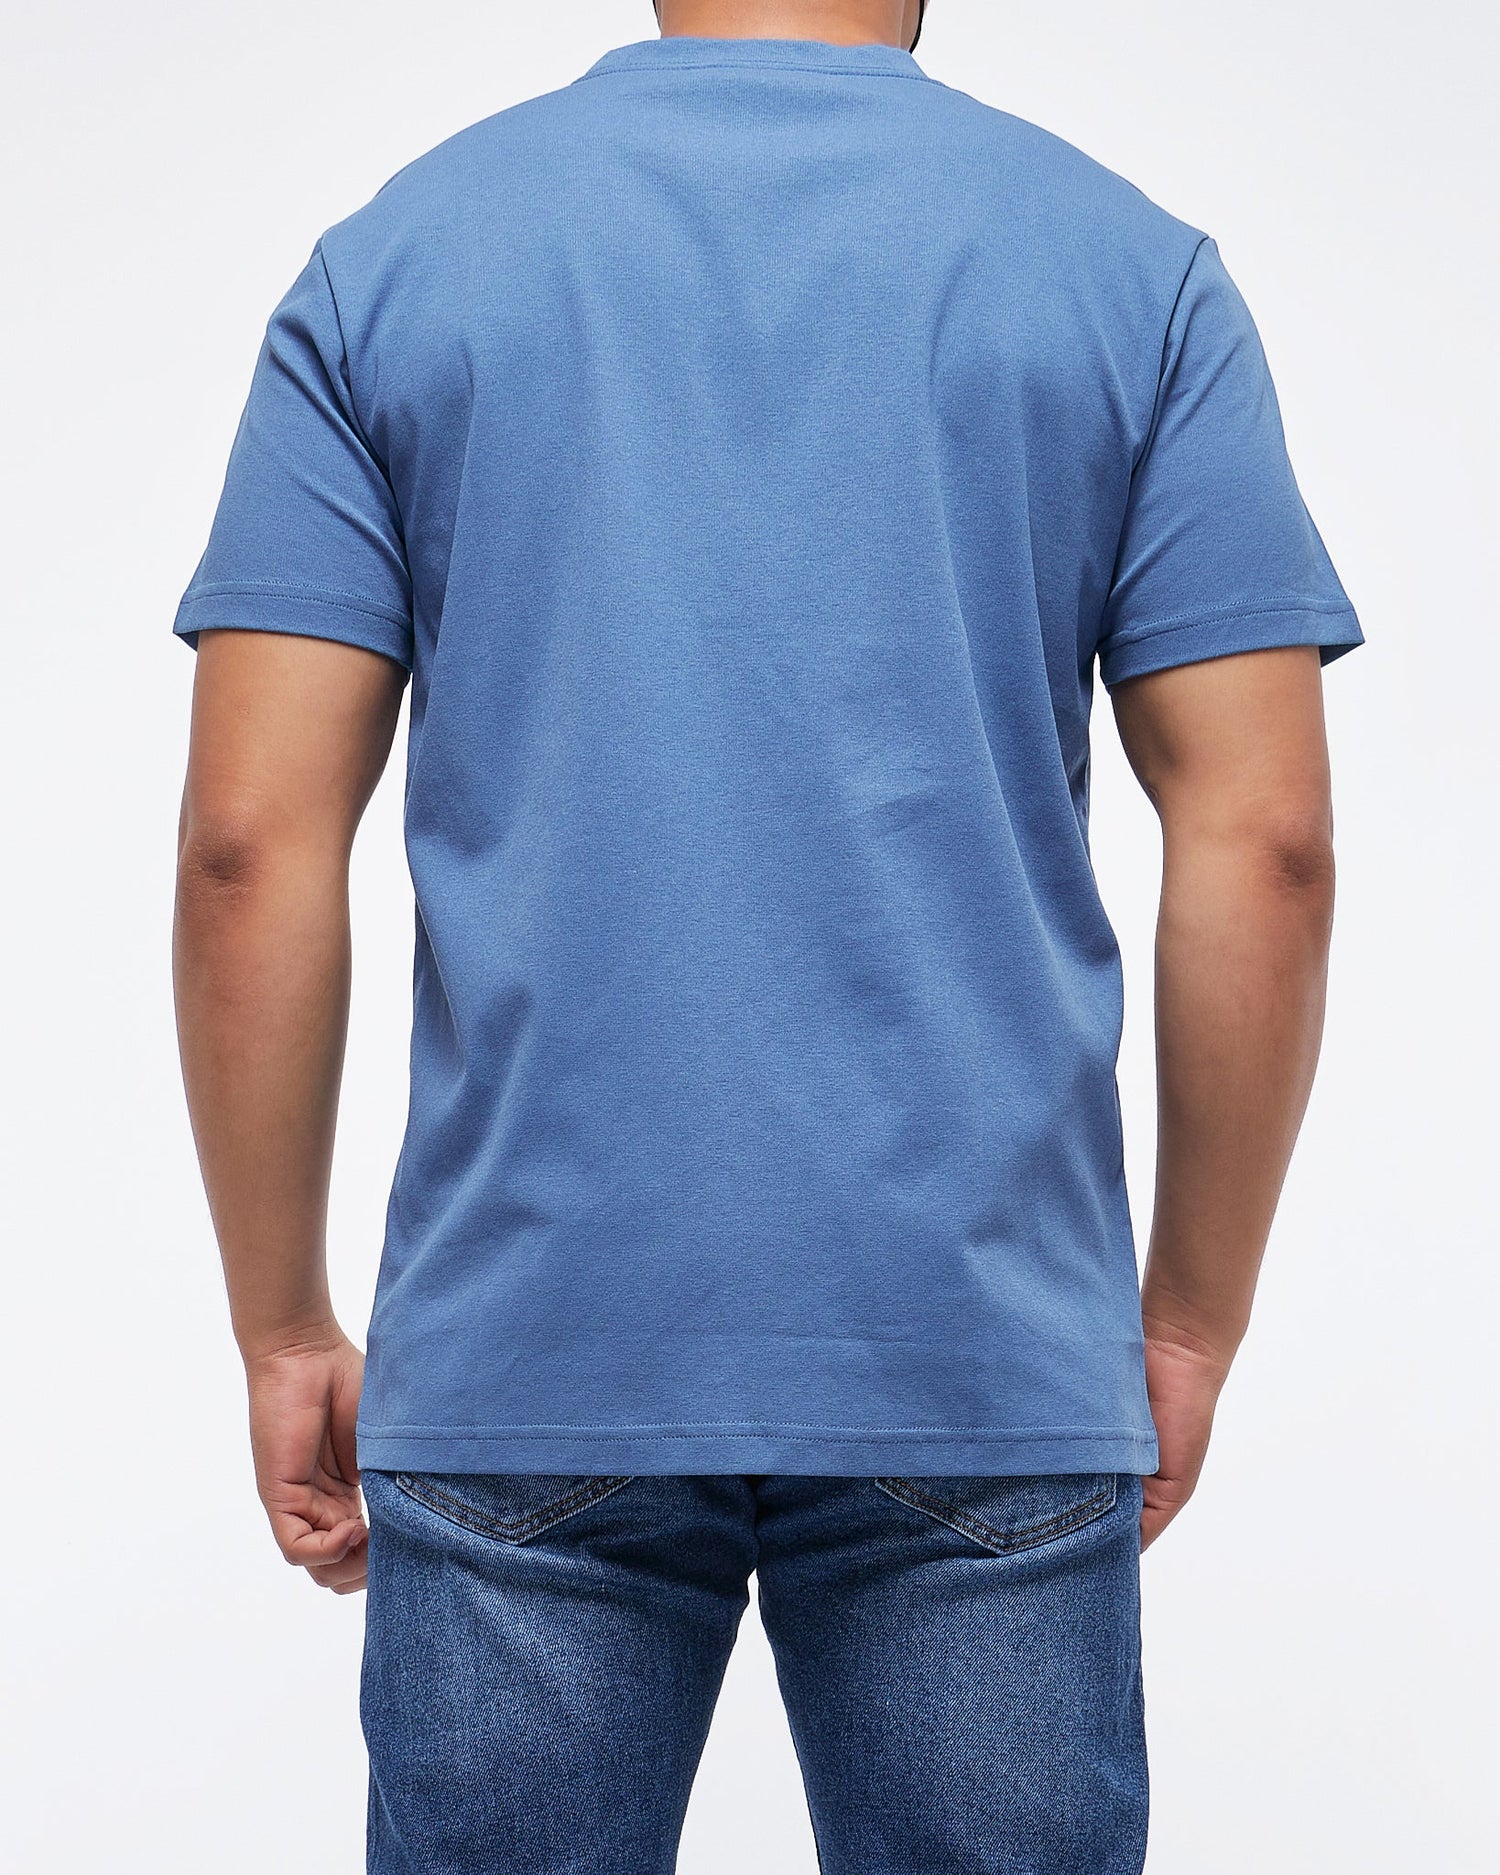 MOI OUTFIT-Plain Color Men T-Shirt 14.90